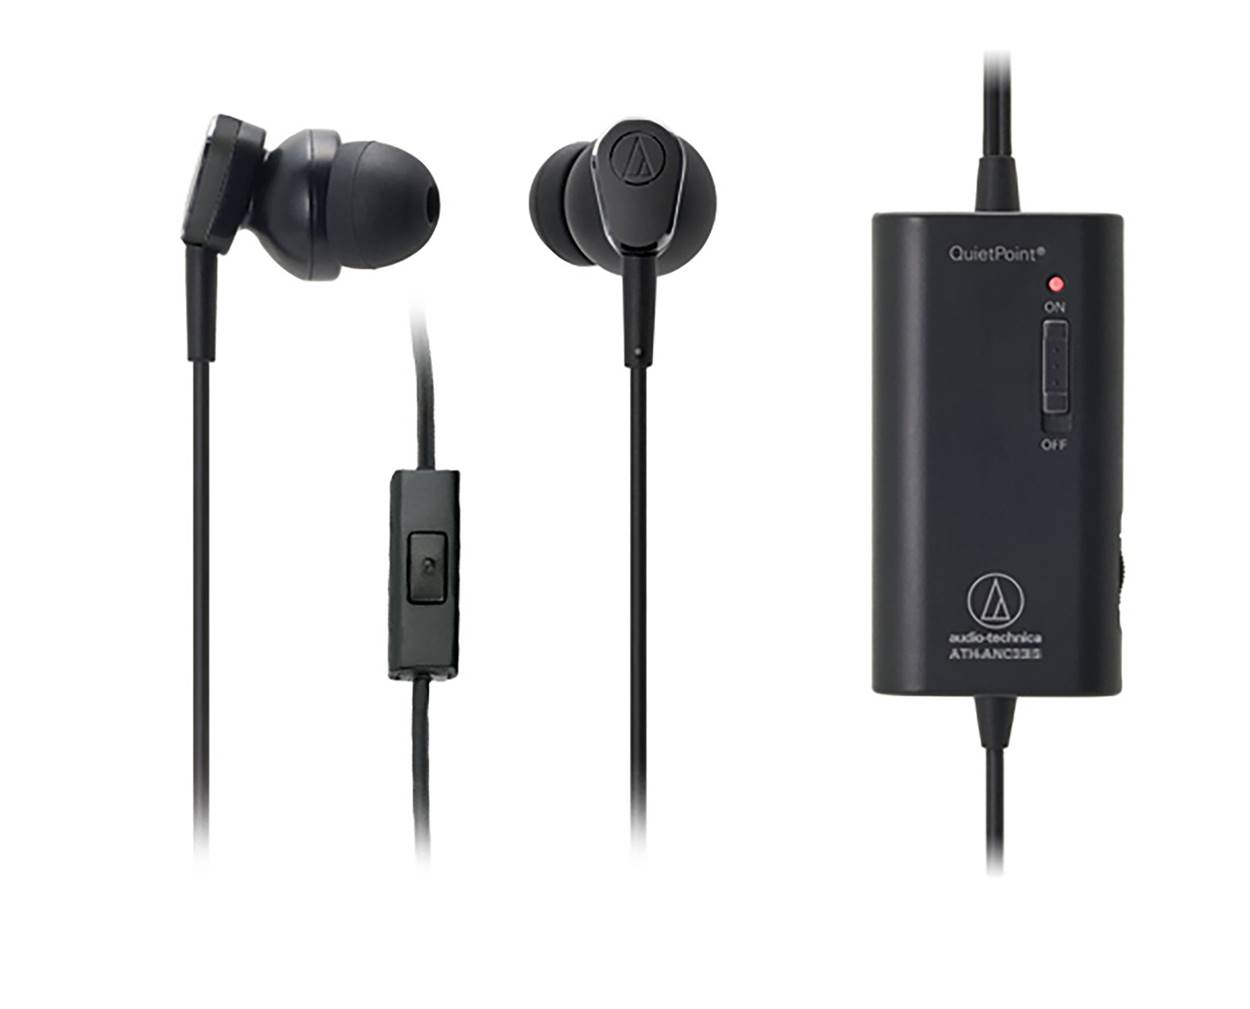 Audio-Technica ATH-ANC33iS Earphones